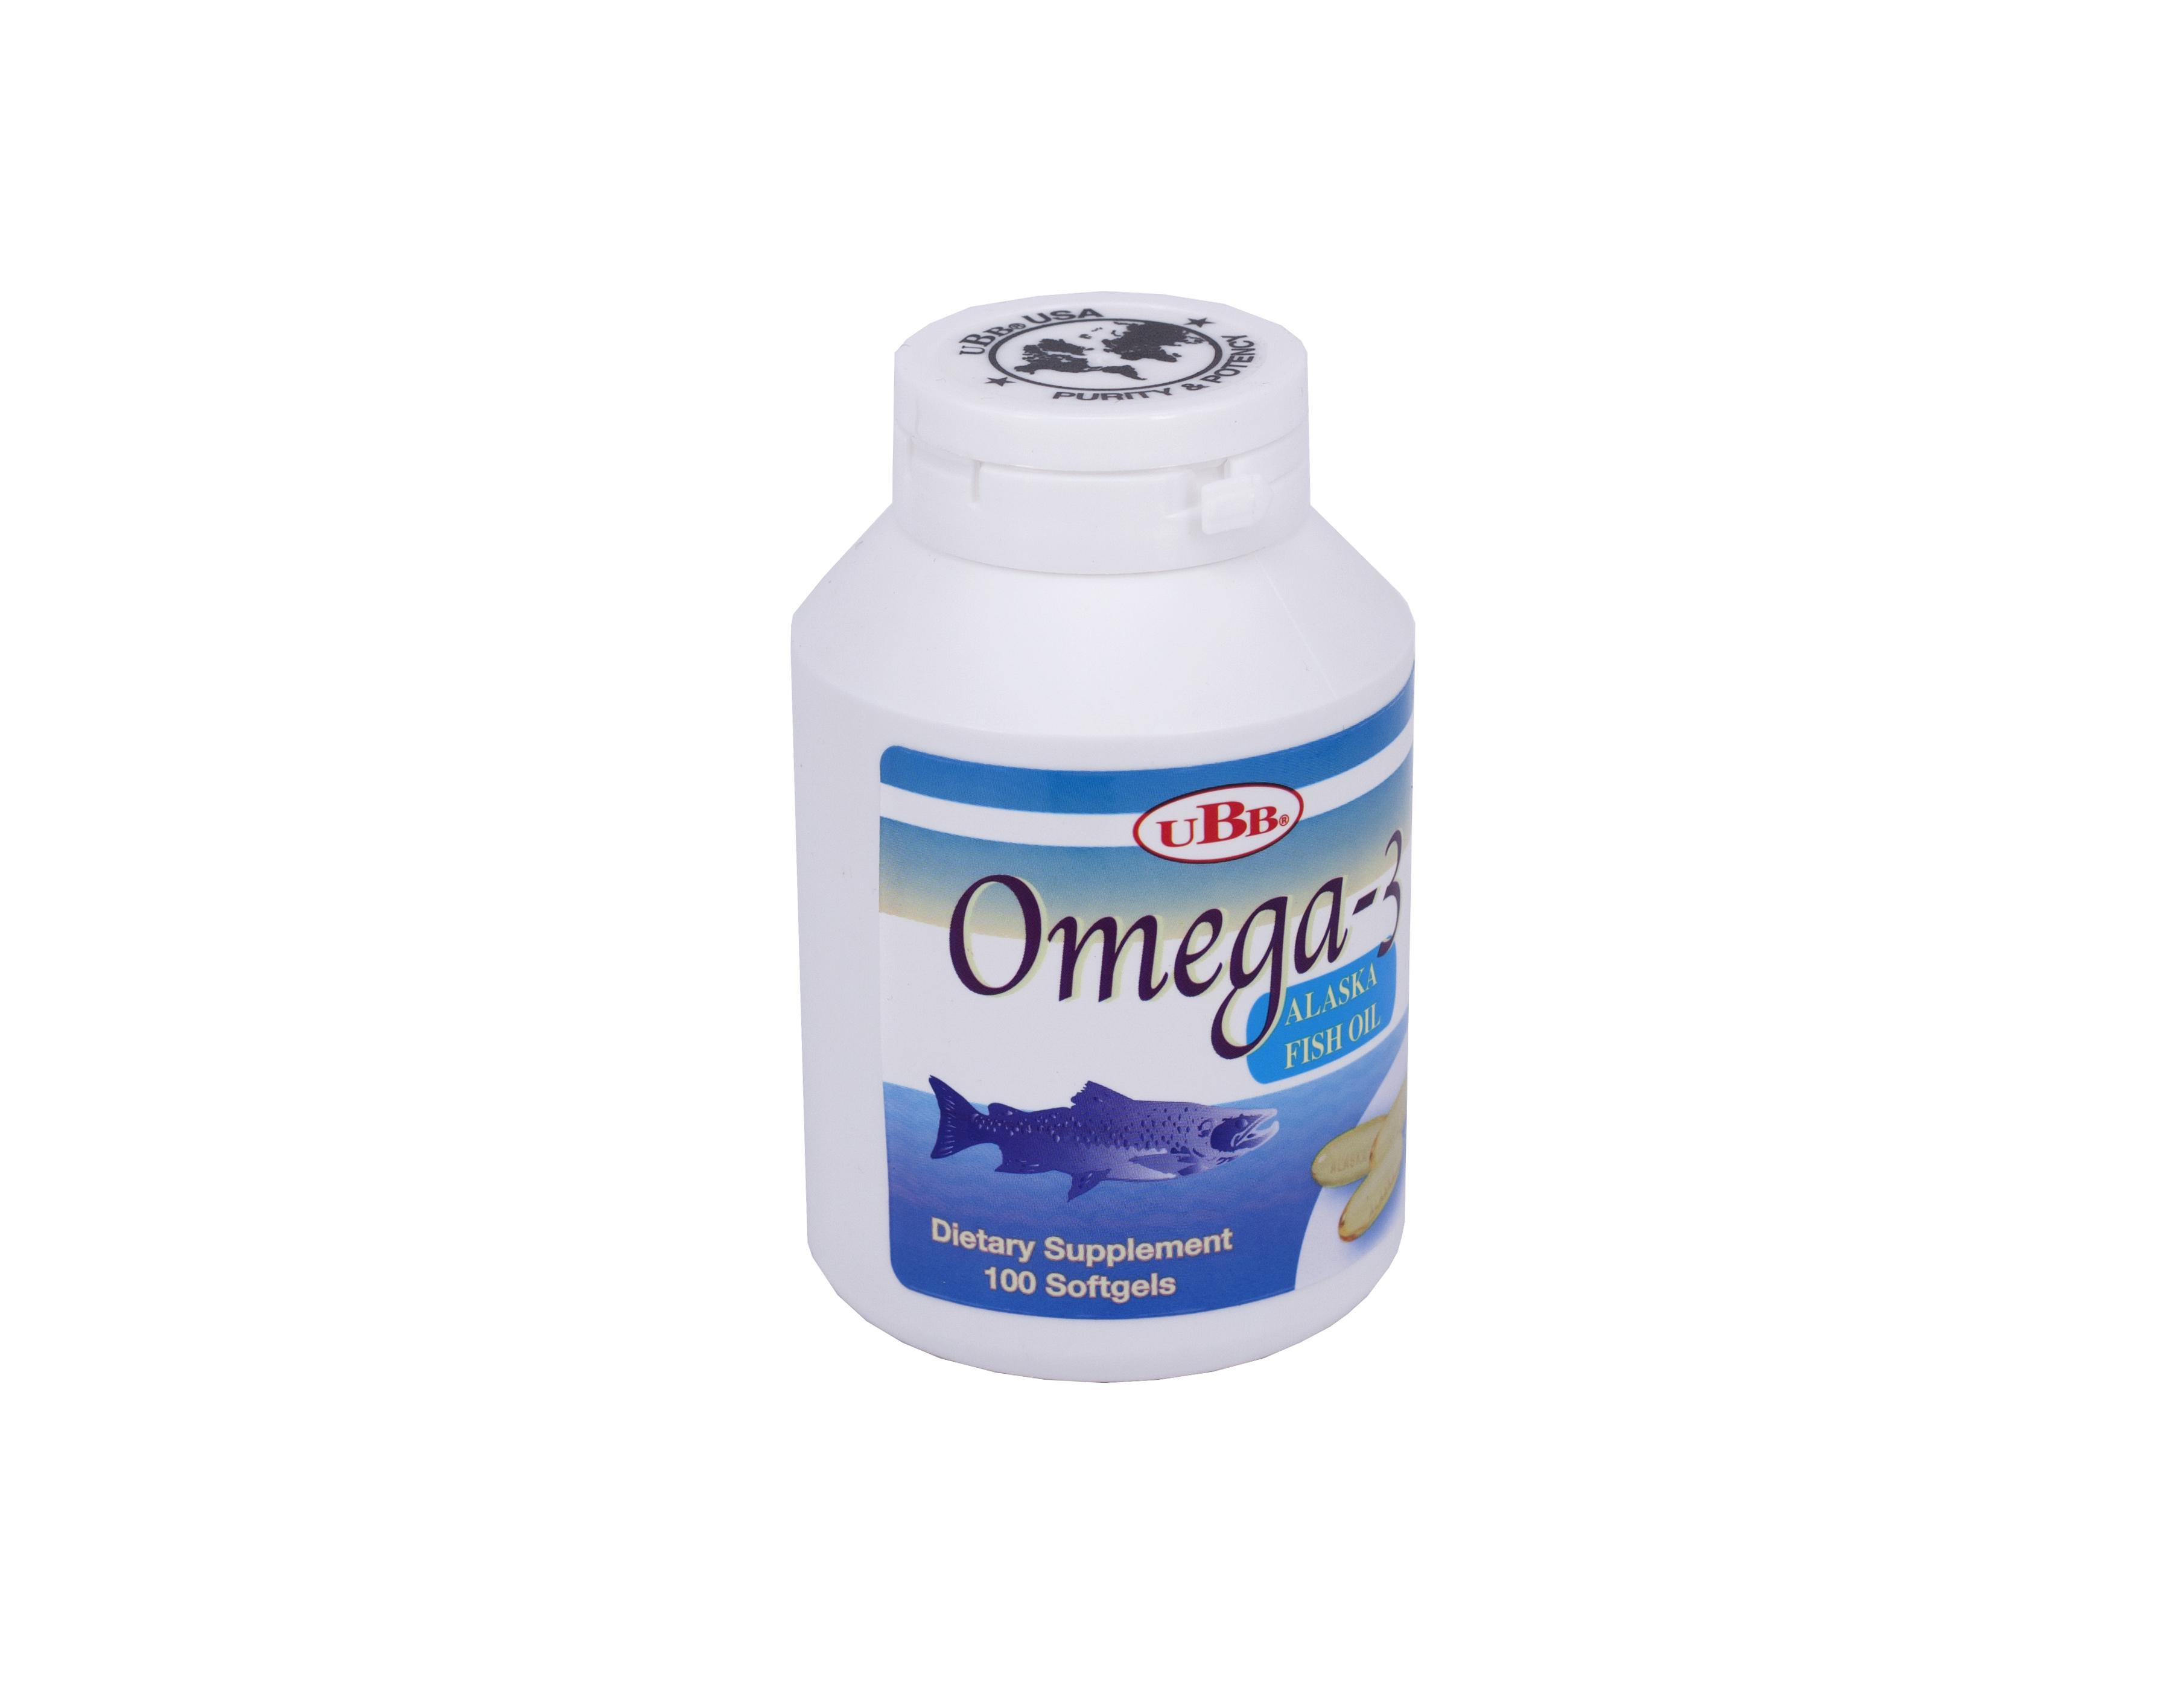 Omega 3 - UBB (C/100v)